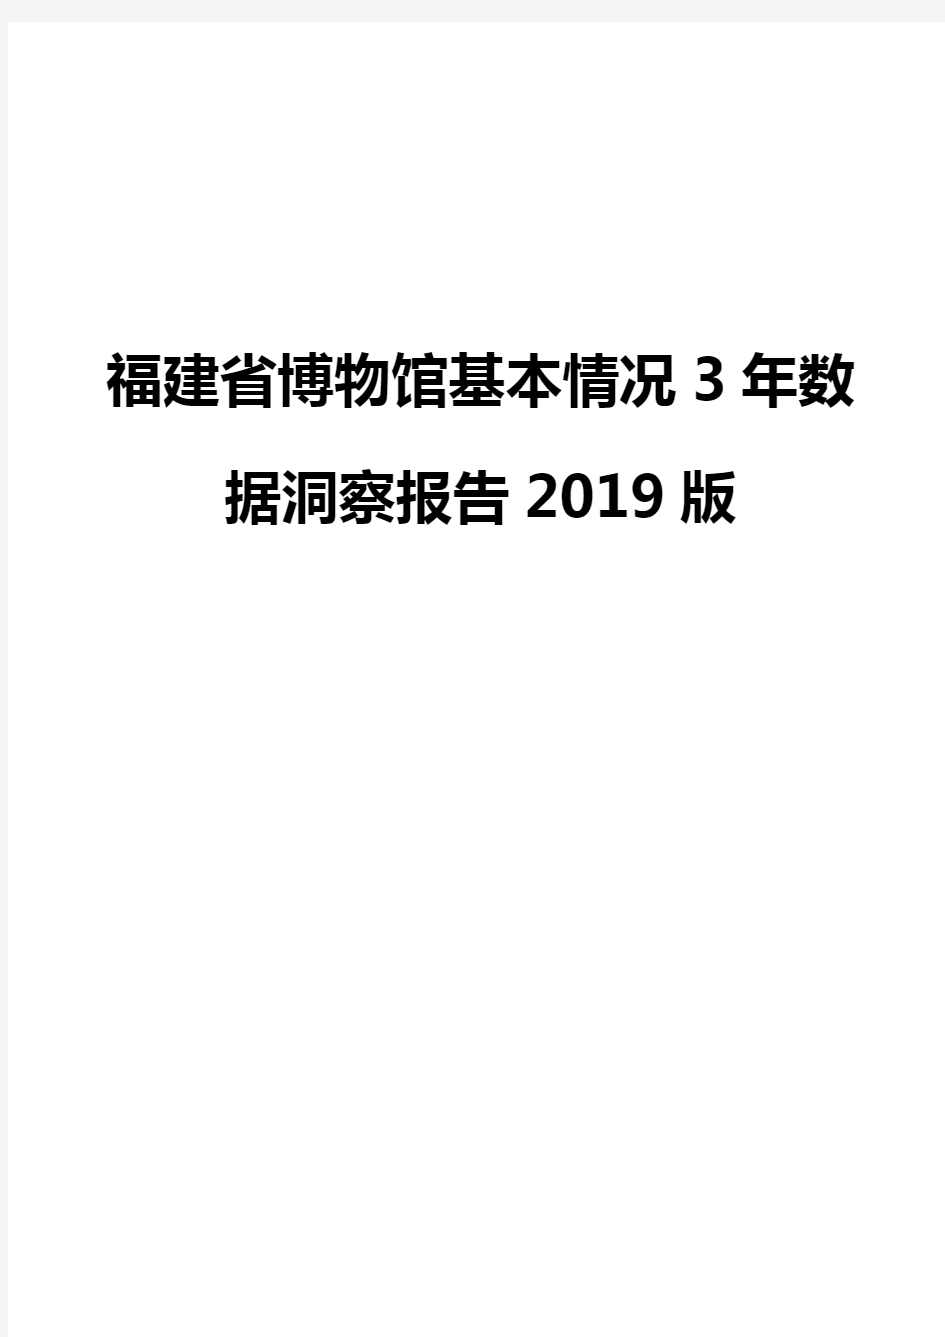 福建省博物馆基本情况3年数据洞察报告2019版